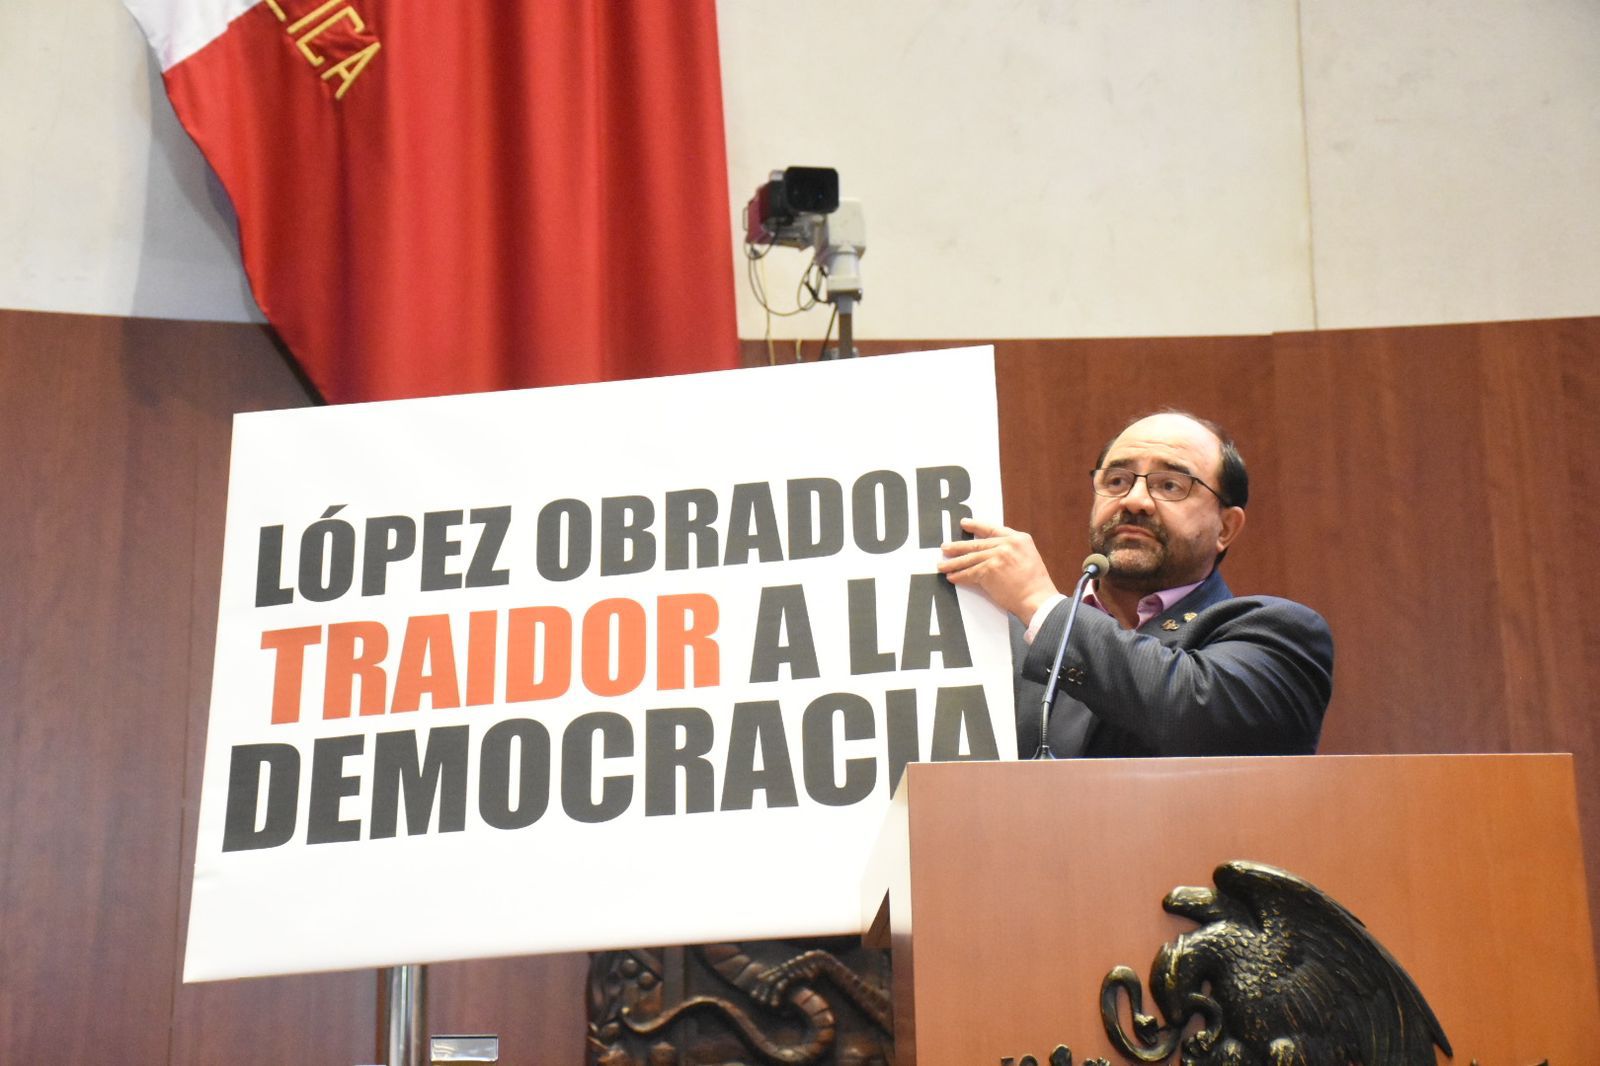 López Obrador traidor a la democracia: Álvarez Icaza